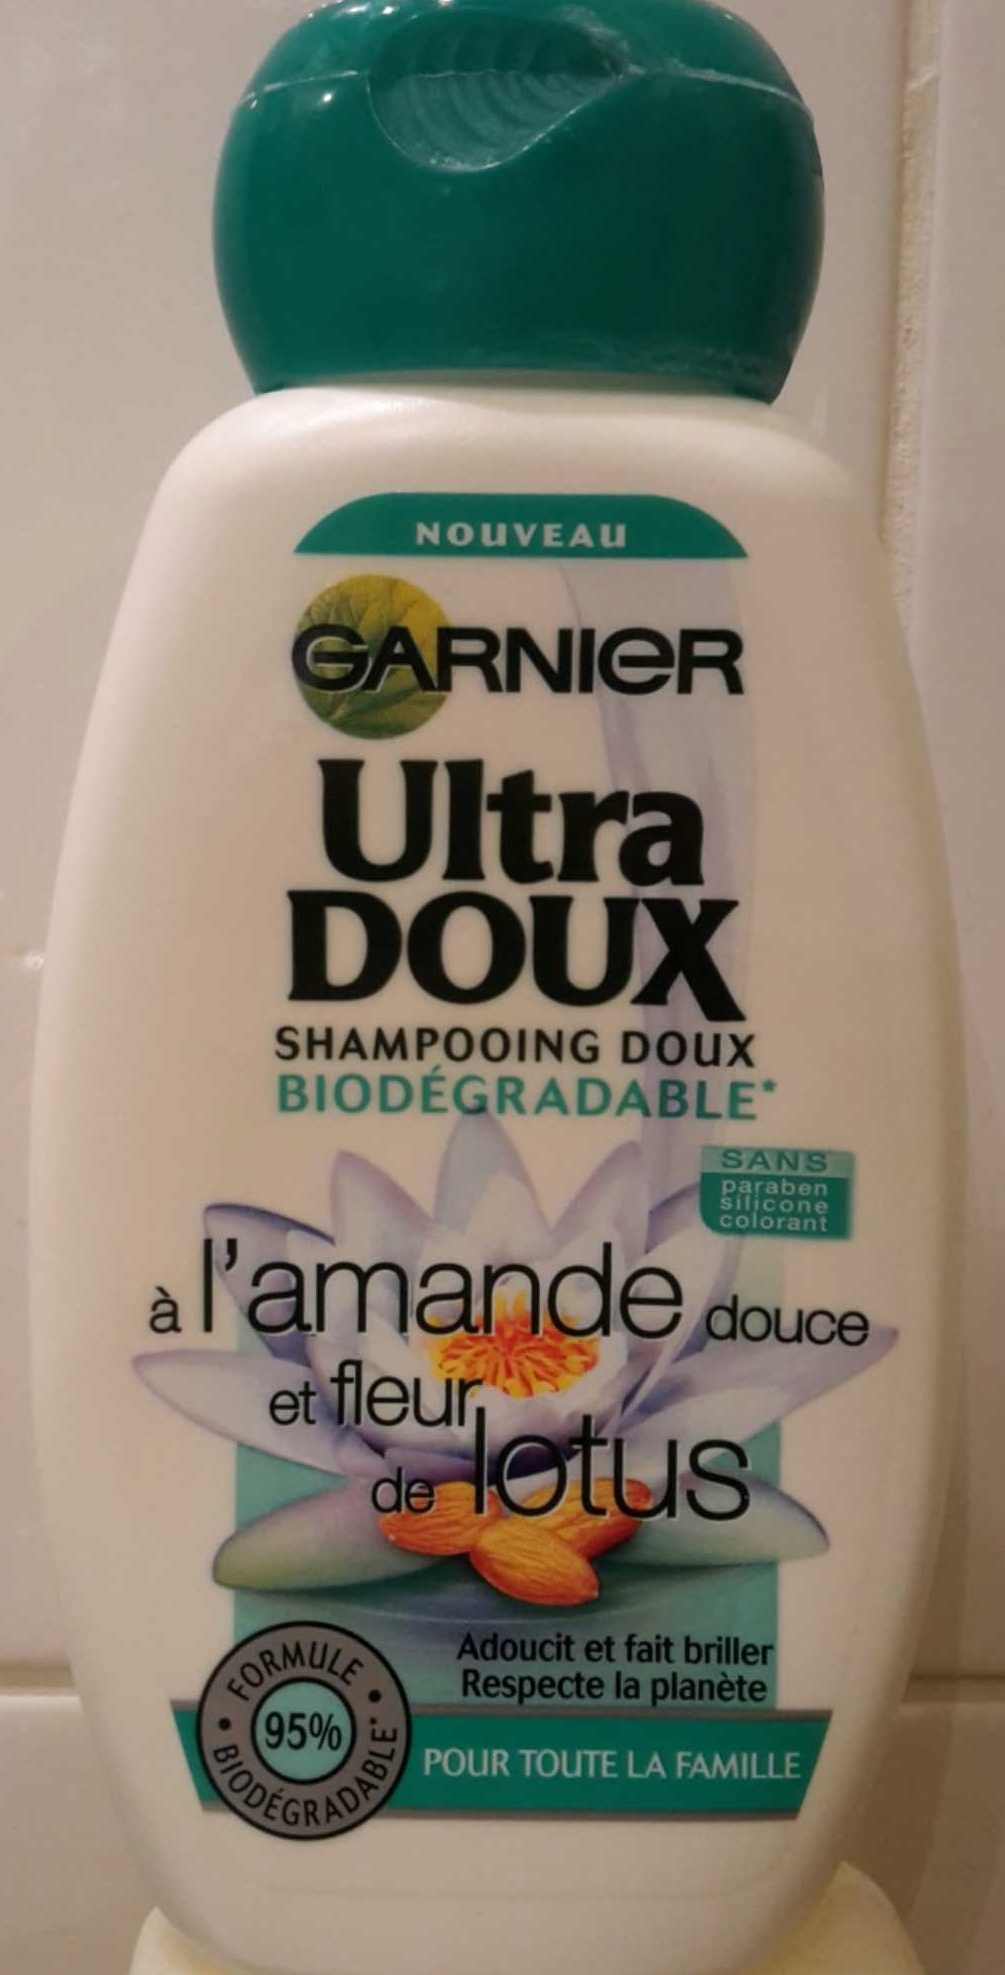 Ultra Doux Shampooing doux biodégradable à l'amande douce et fleur de lotus - Product - fr